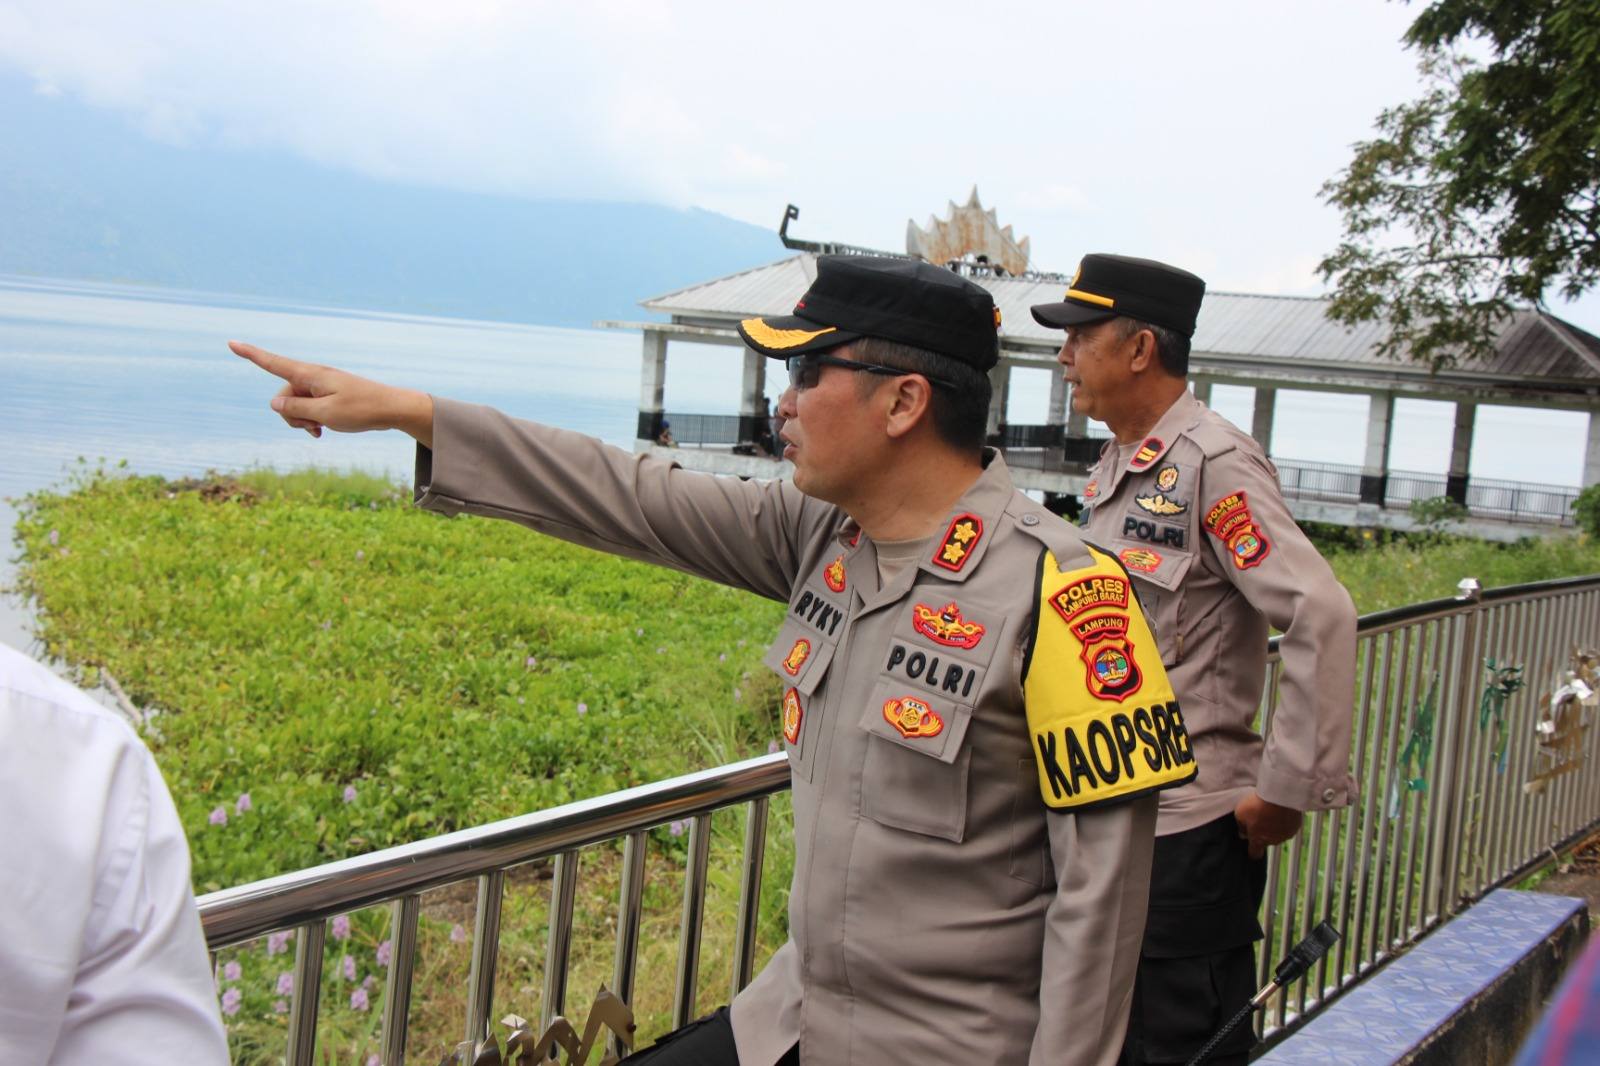 Sambut Tahun Baru, Kapolres Lampung Barat Pantau Kesiapan dan Keamanan Objek Wisata